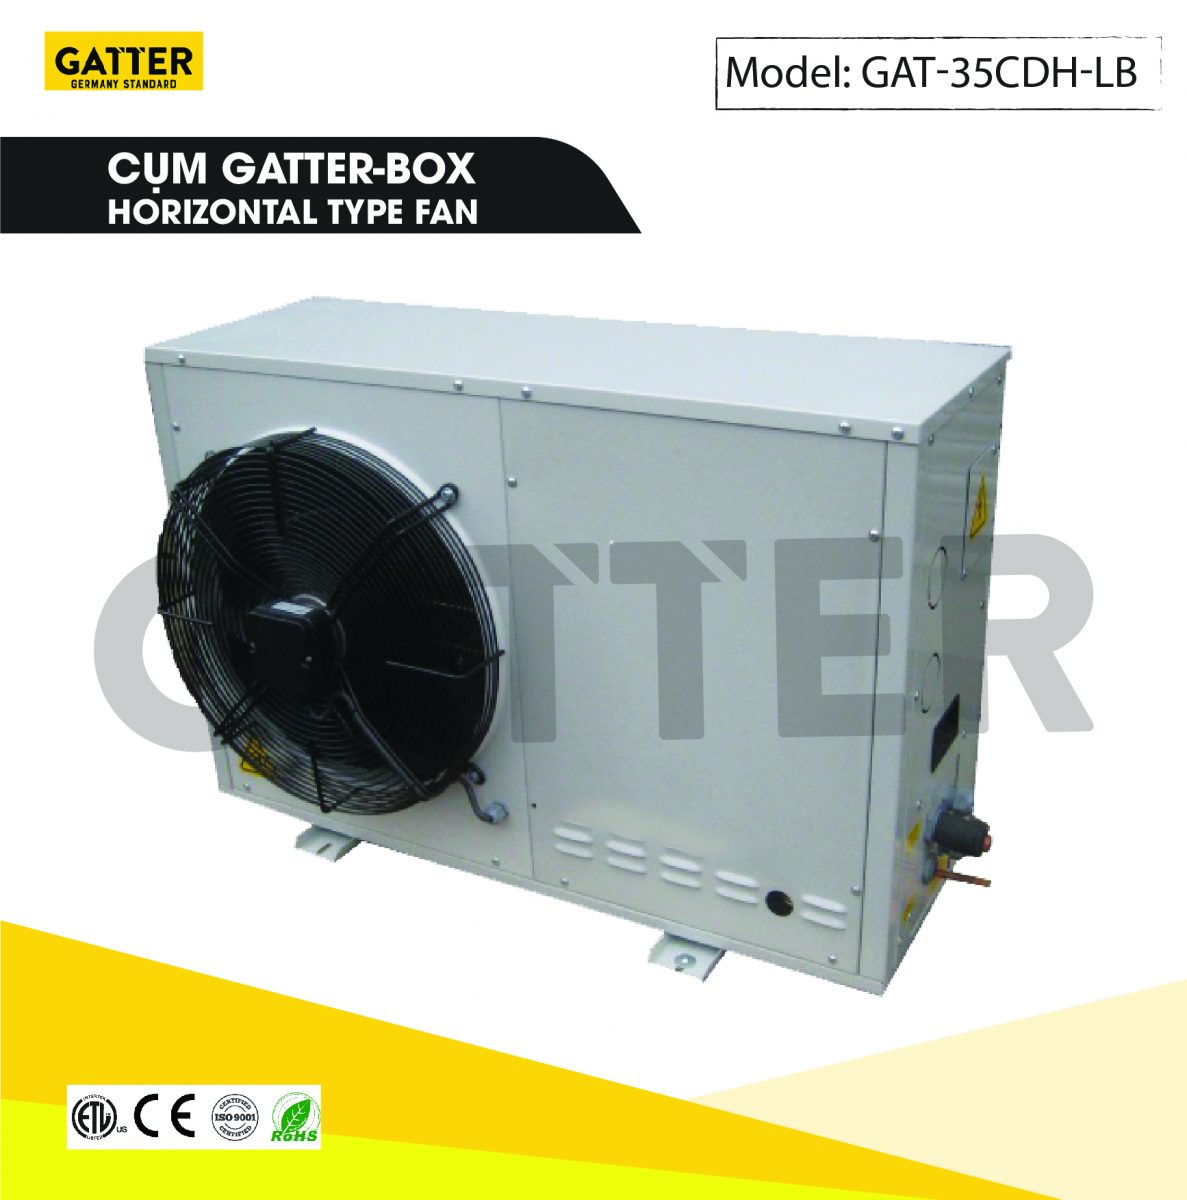 Cụm máy nén Gatter-box GAT-35CDH-LB